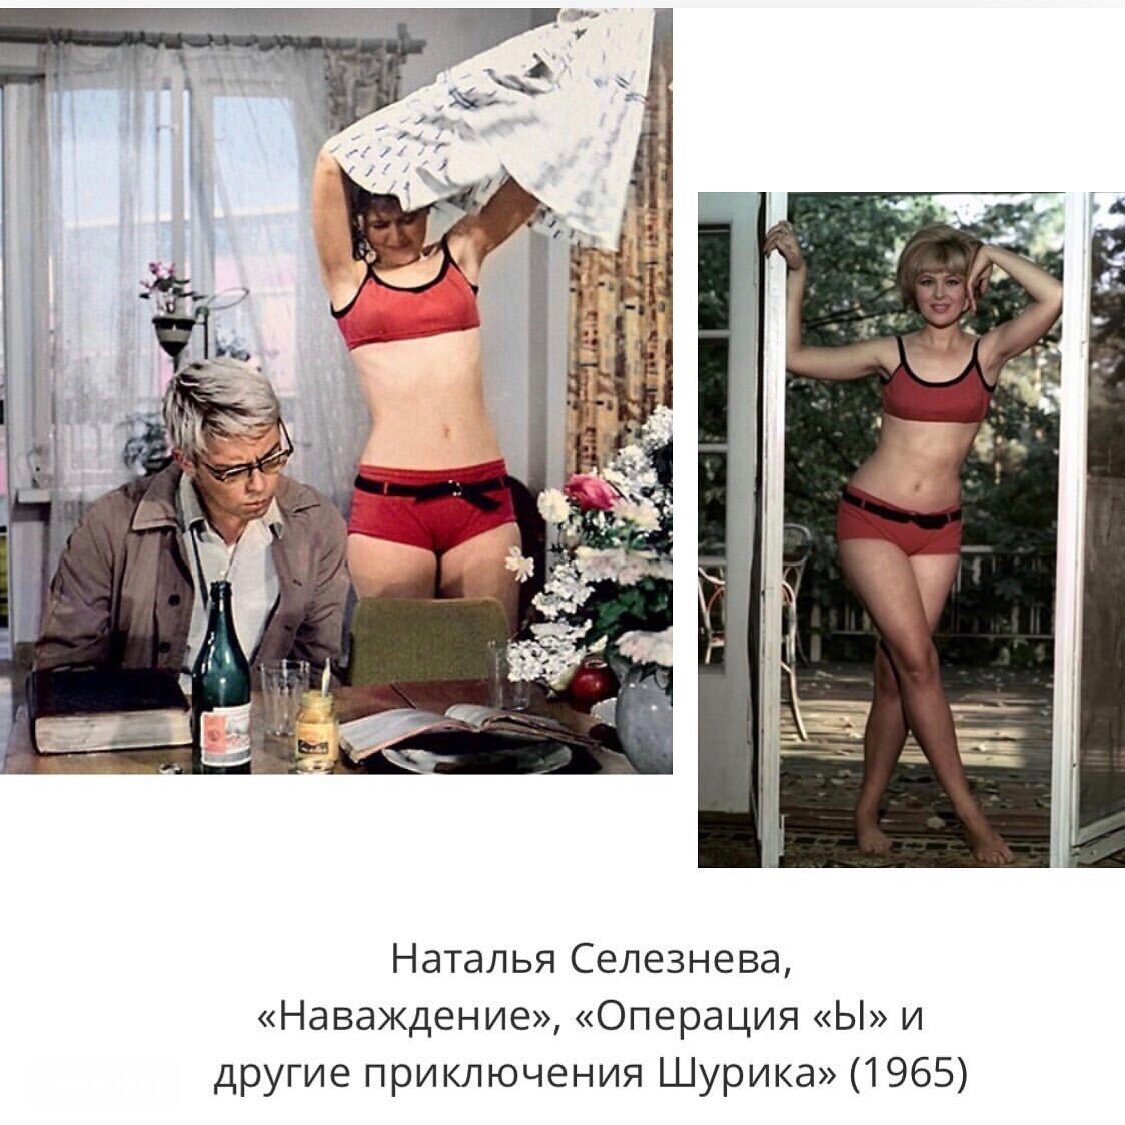 Изумительная Наталья Селезнева: потрясающие кадры молодости